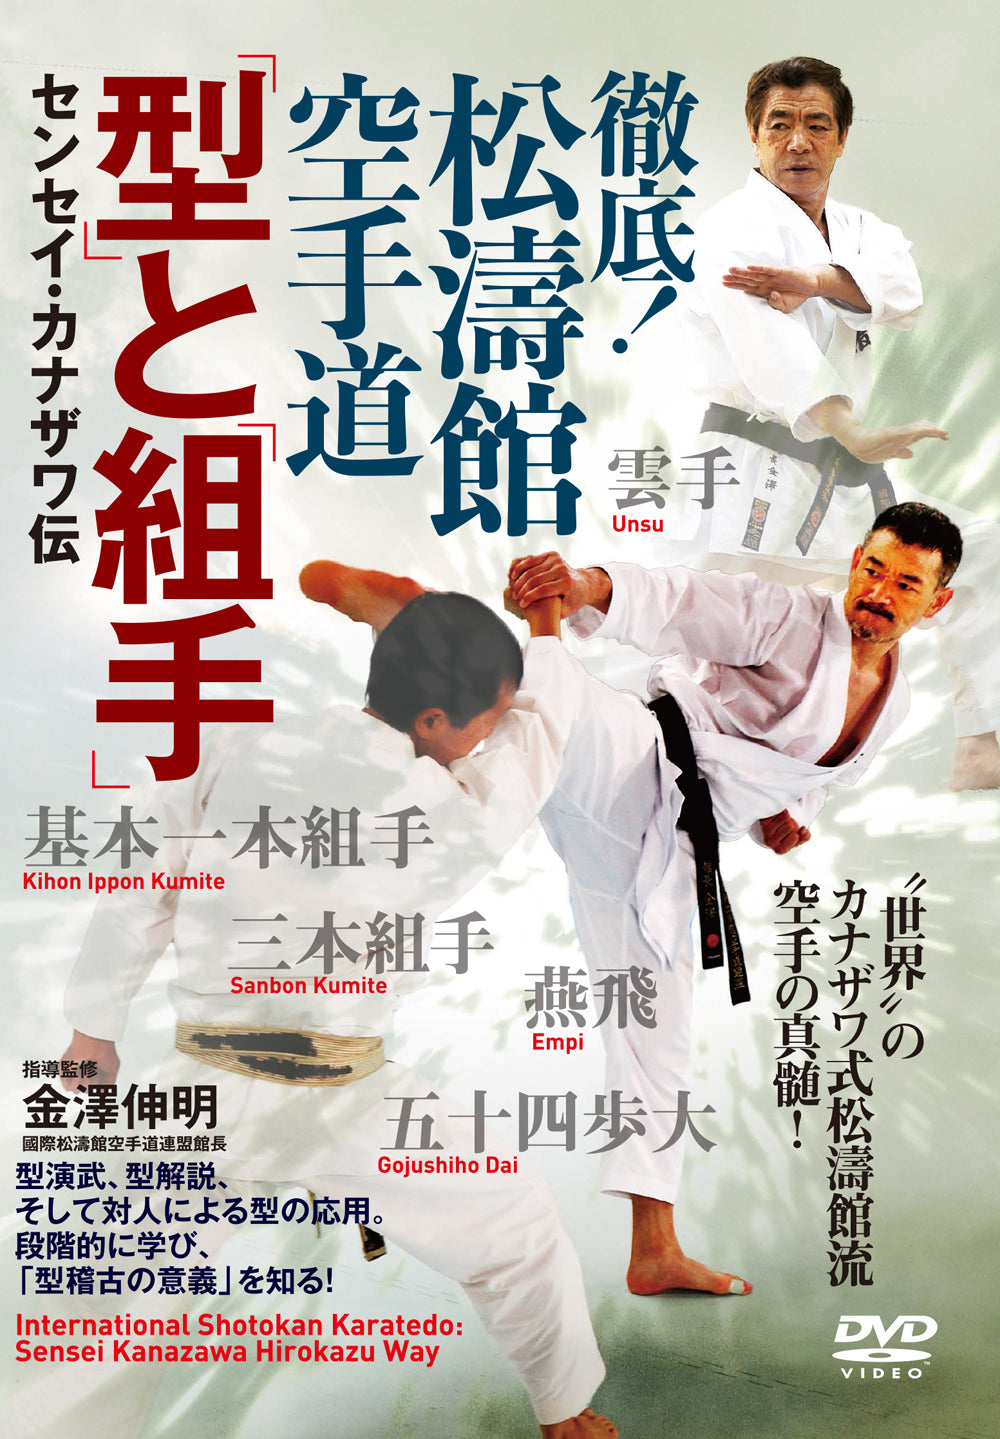 International Shotokan Karatedo: The Hirokazu Kanazawa Way DVD